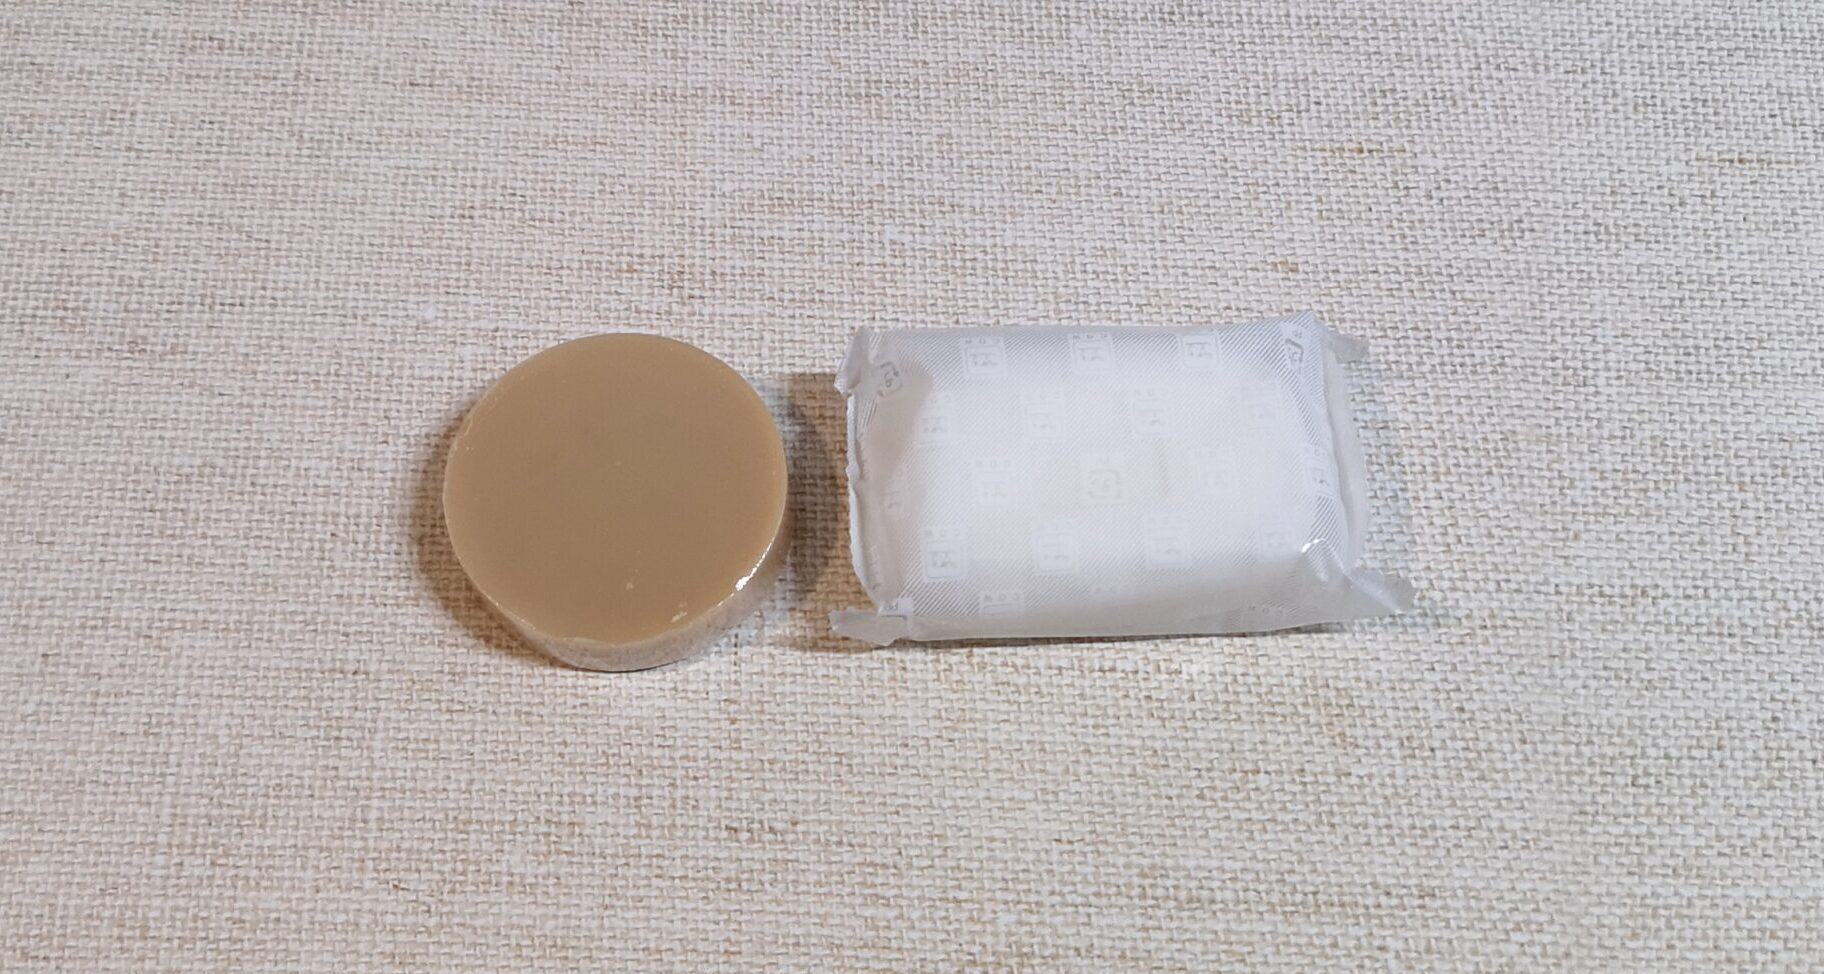 ニコ石鹸と牛乳石鹸